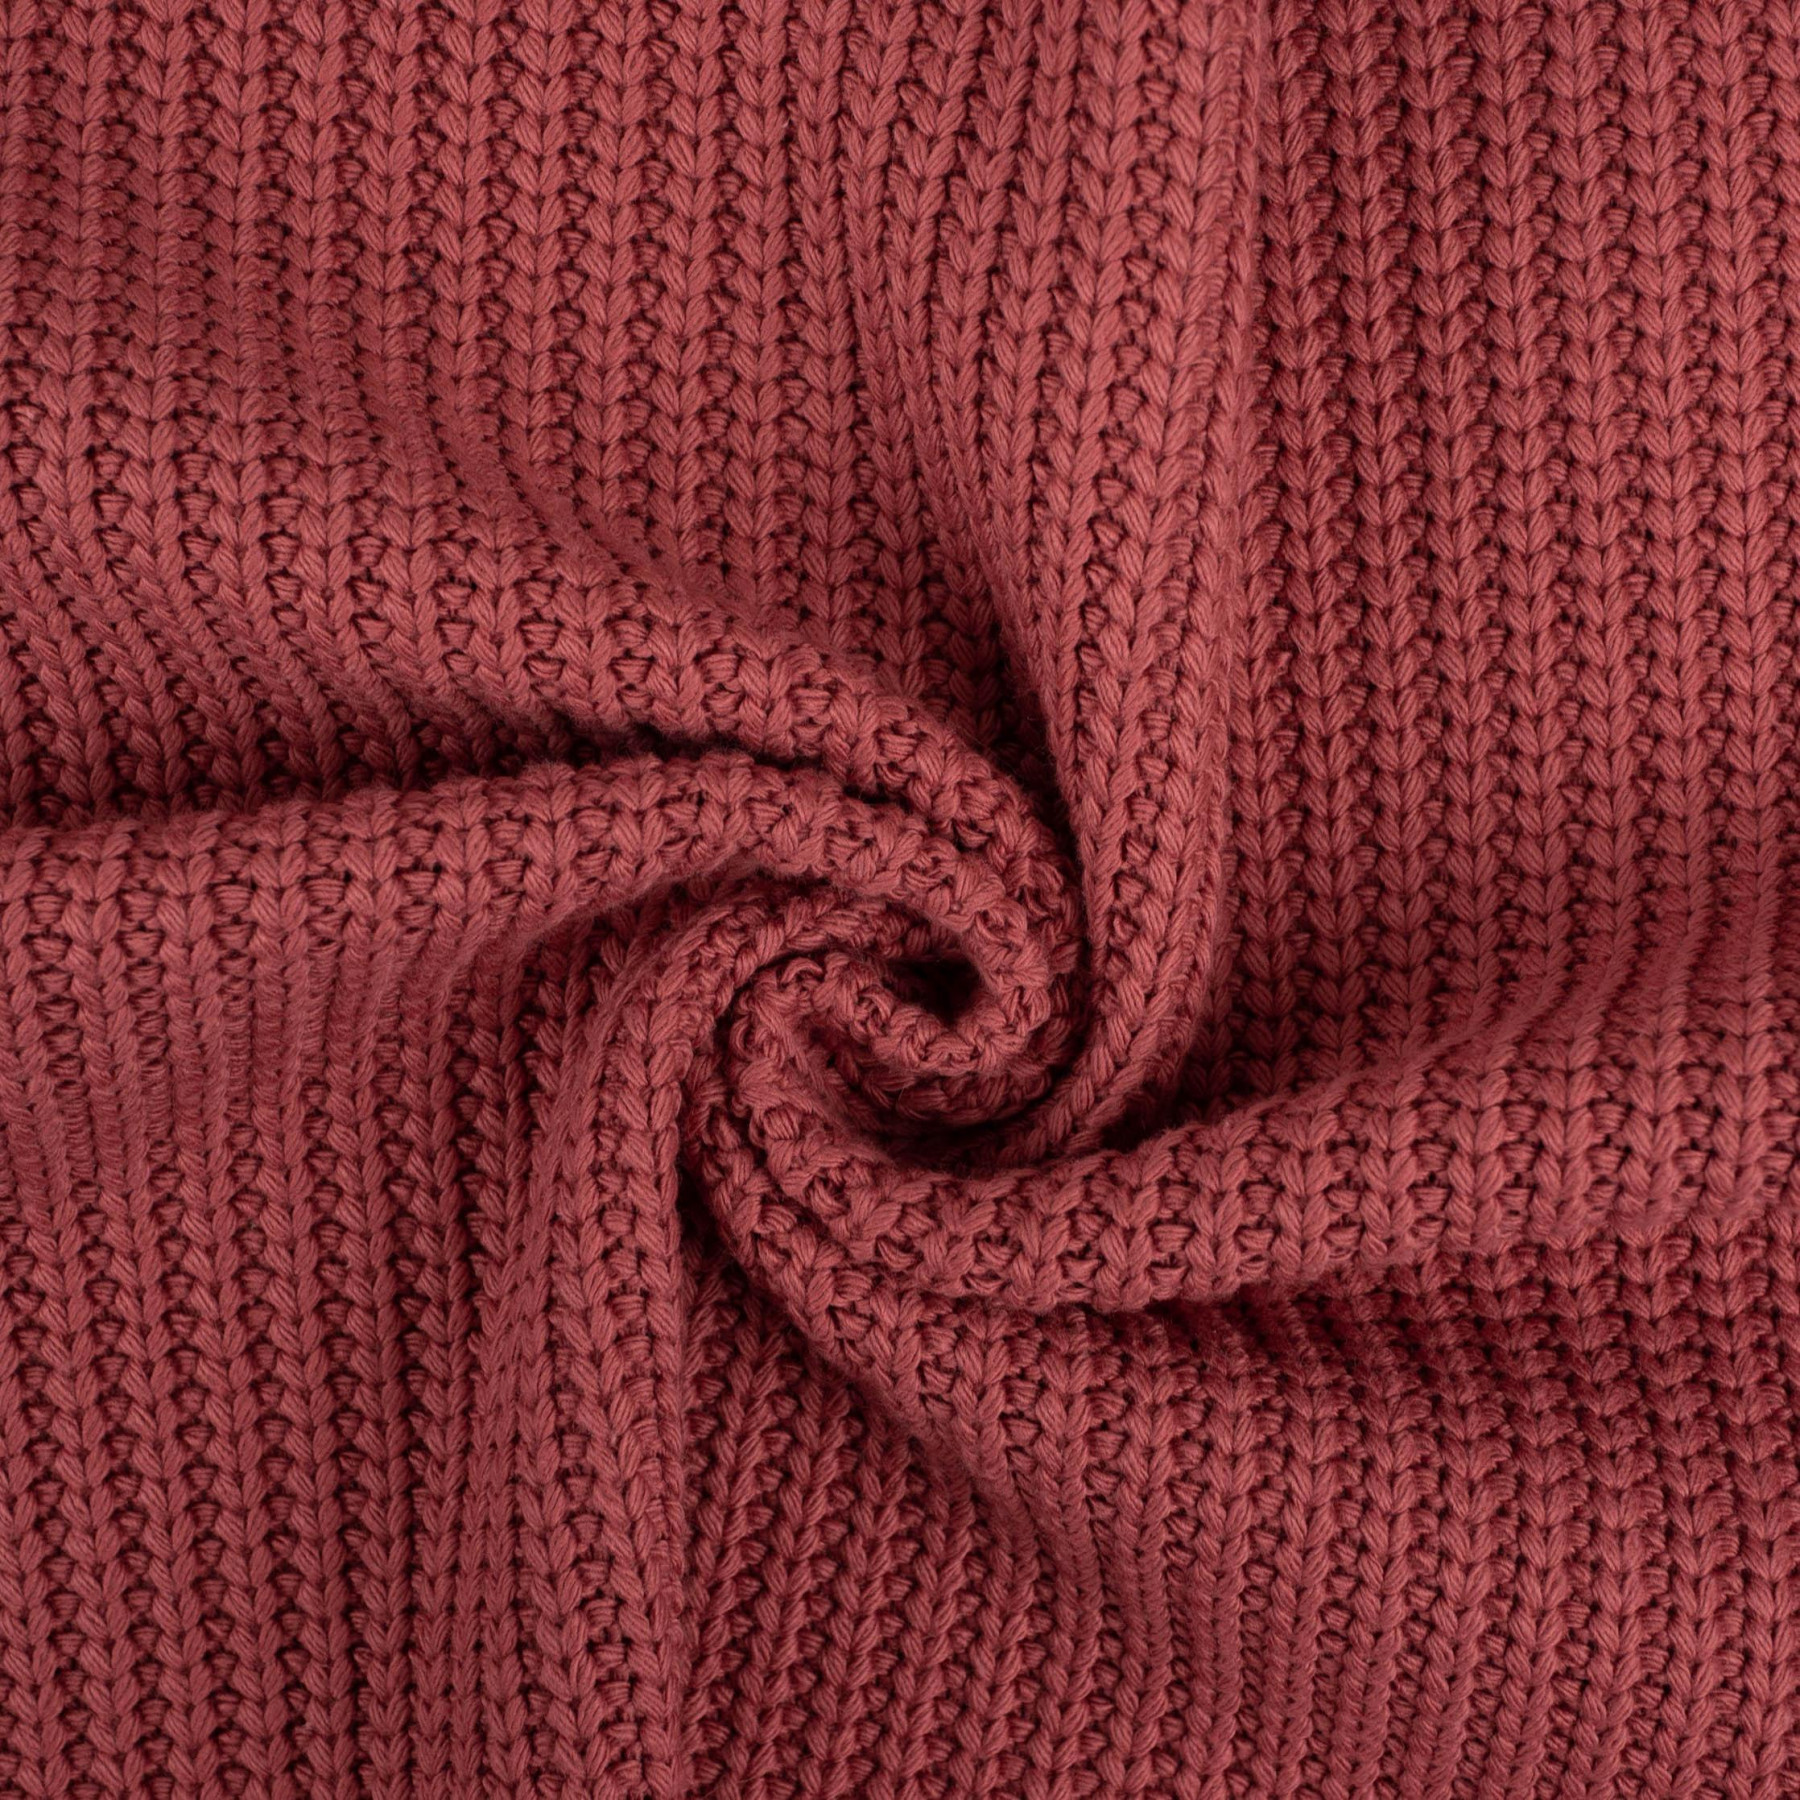 CEDAR - Cotton sweater knit fabric